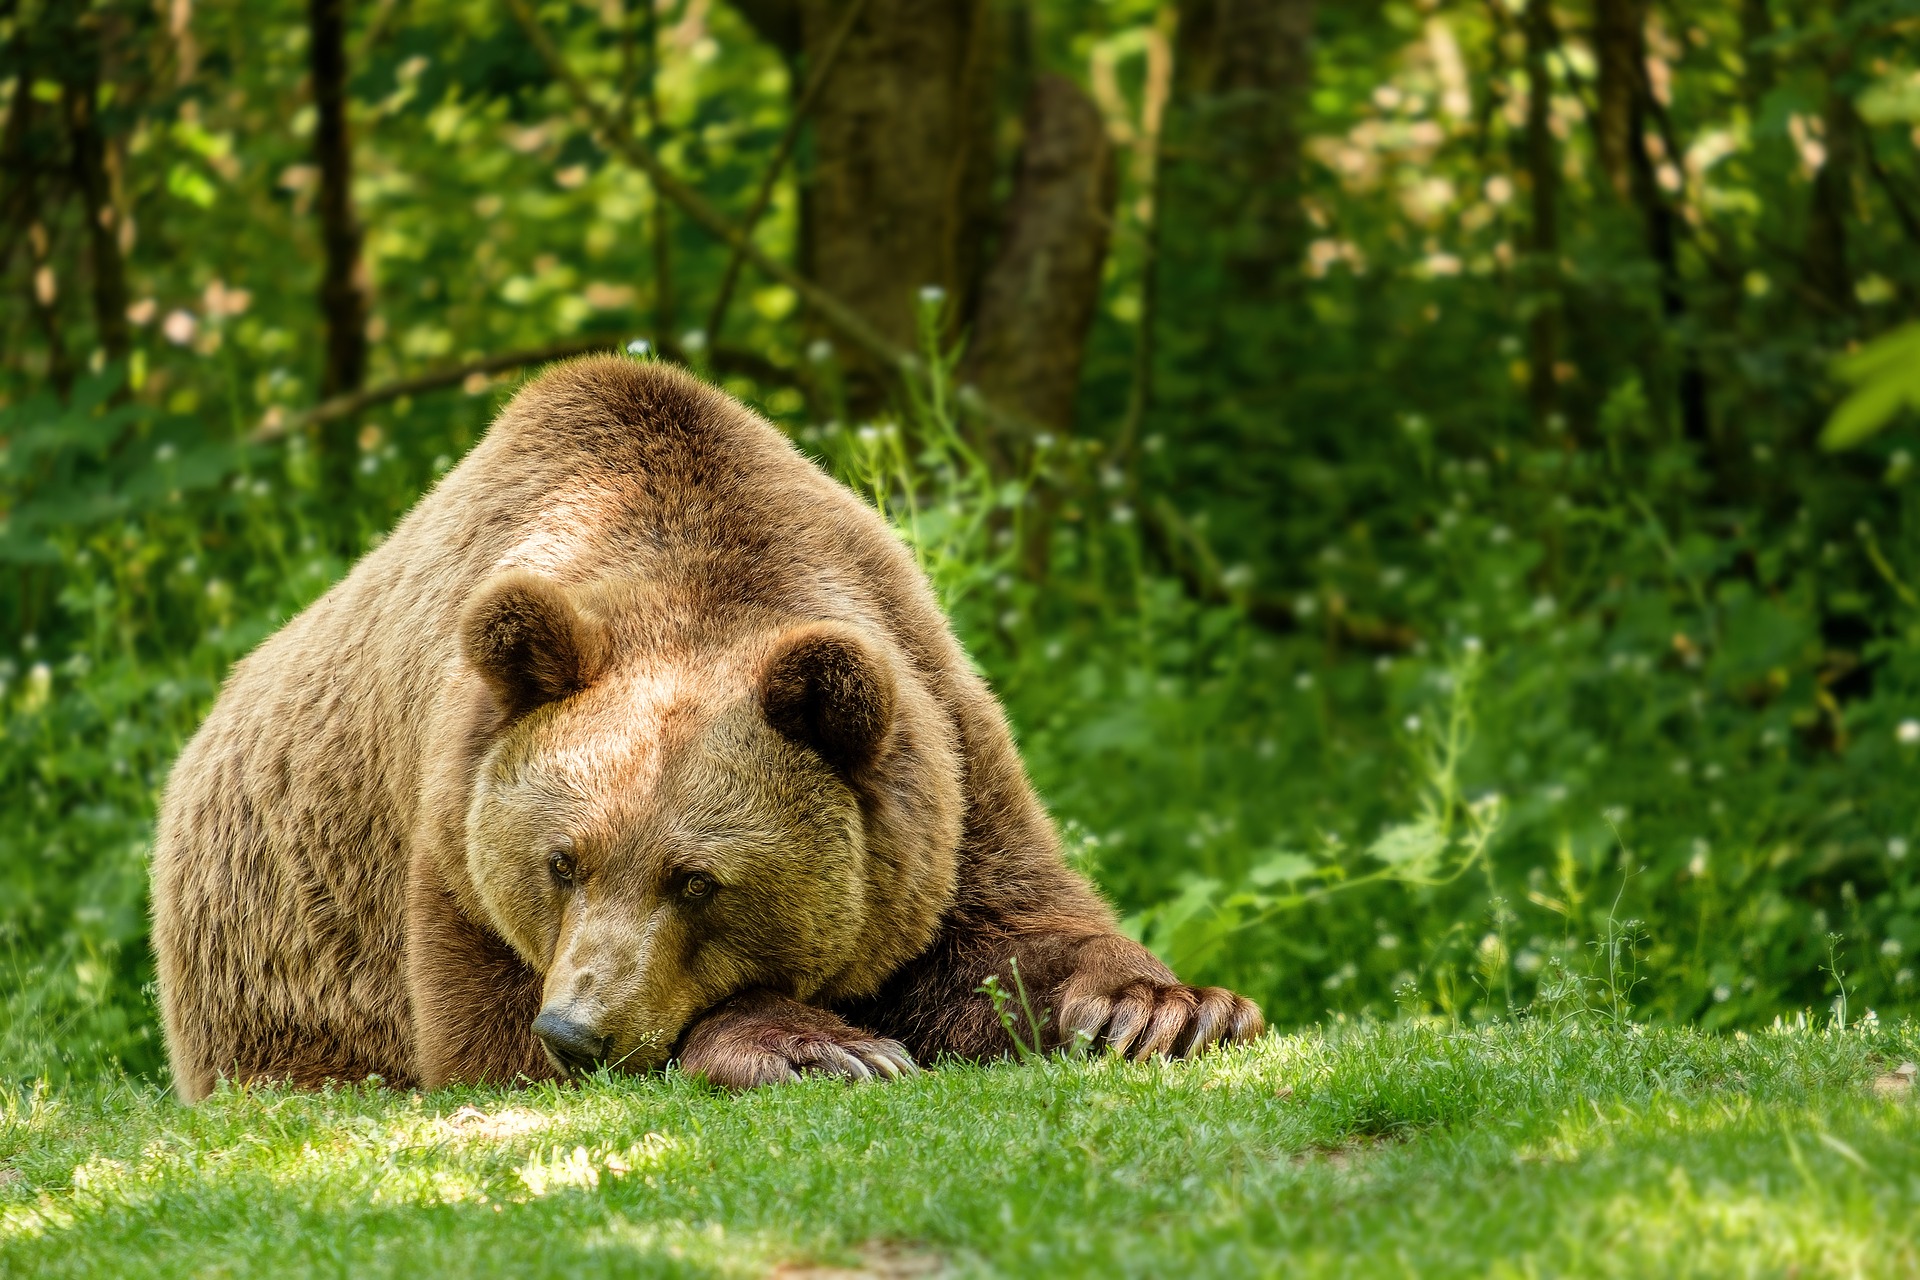 Bärenalarm in Siebenbürgen